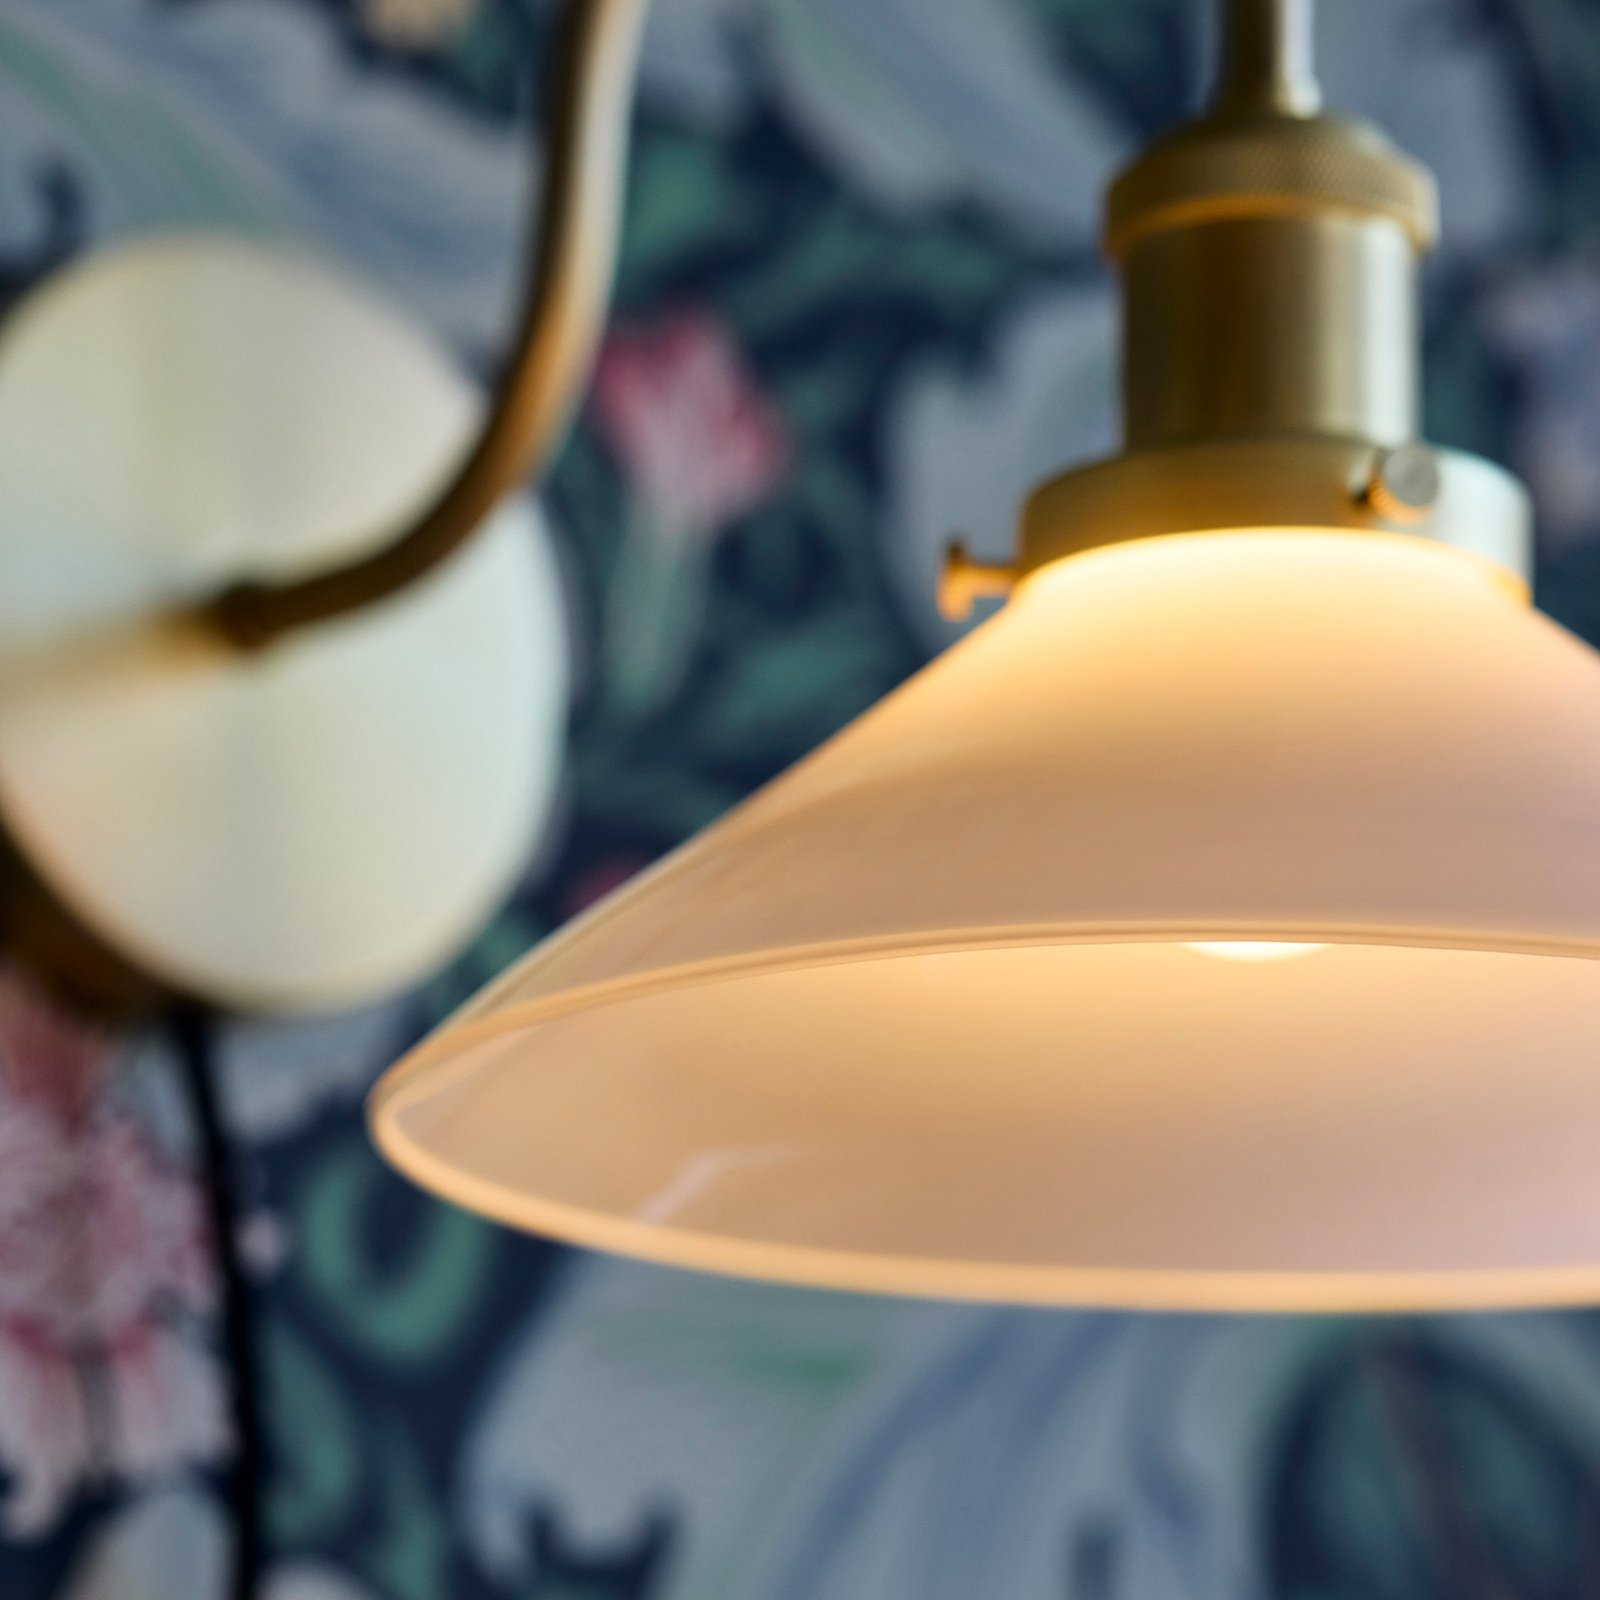 PR Home Axel fali lámpa, sárgaréz színű, opálüveg ernyővel